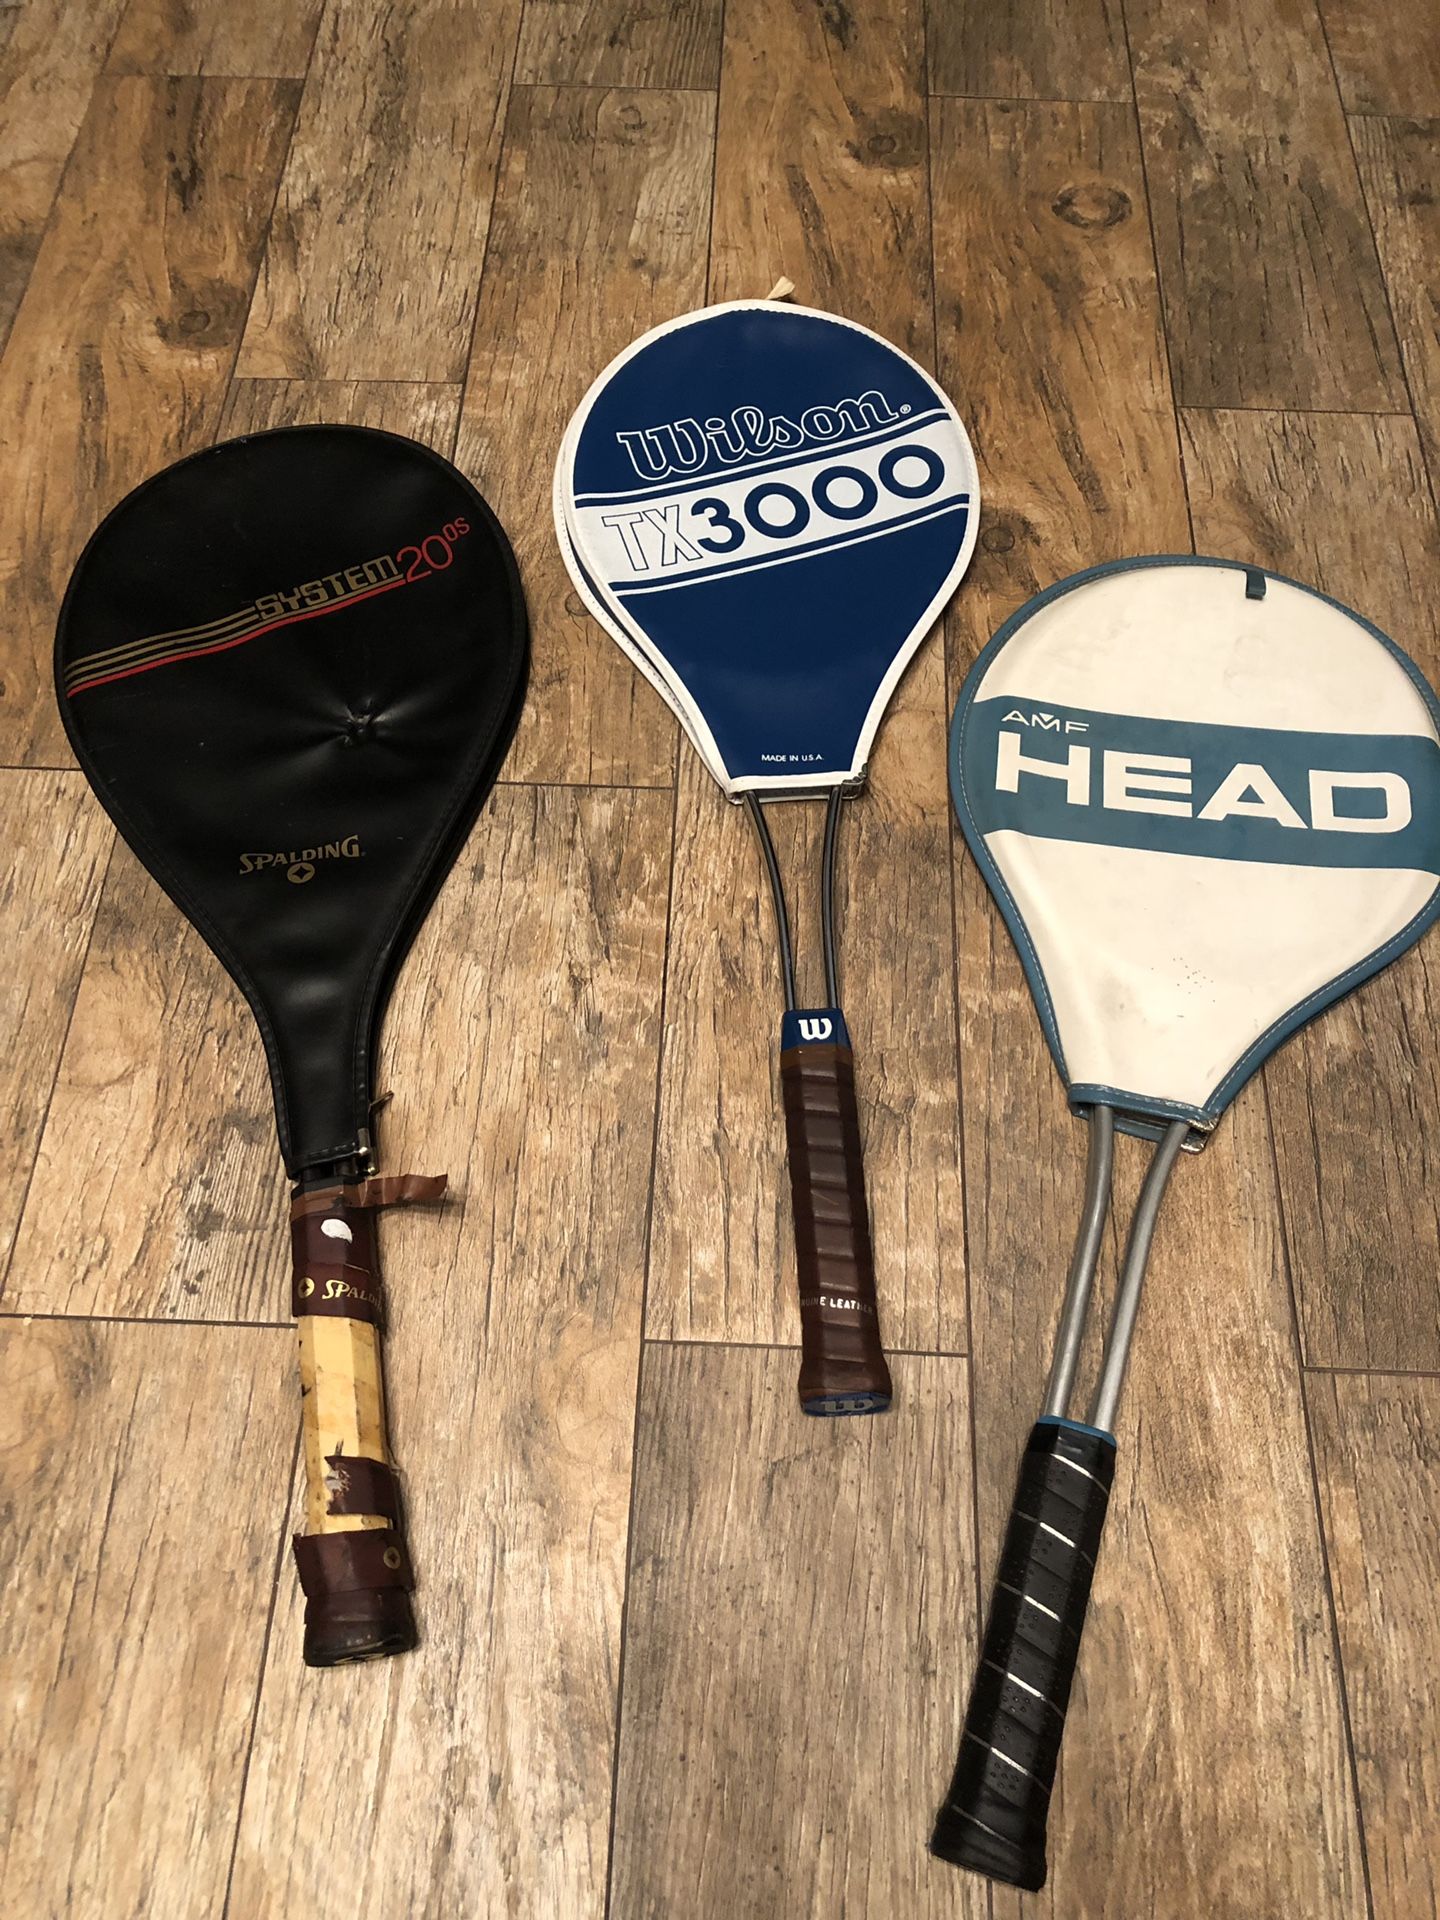 Lot of 3 tennis racket Spalding Wilson head vintage